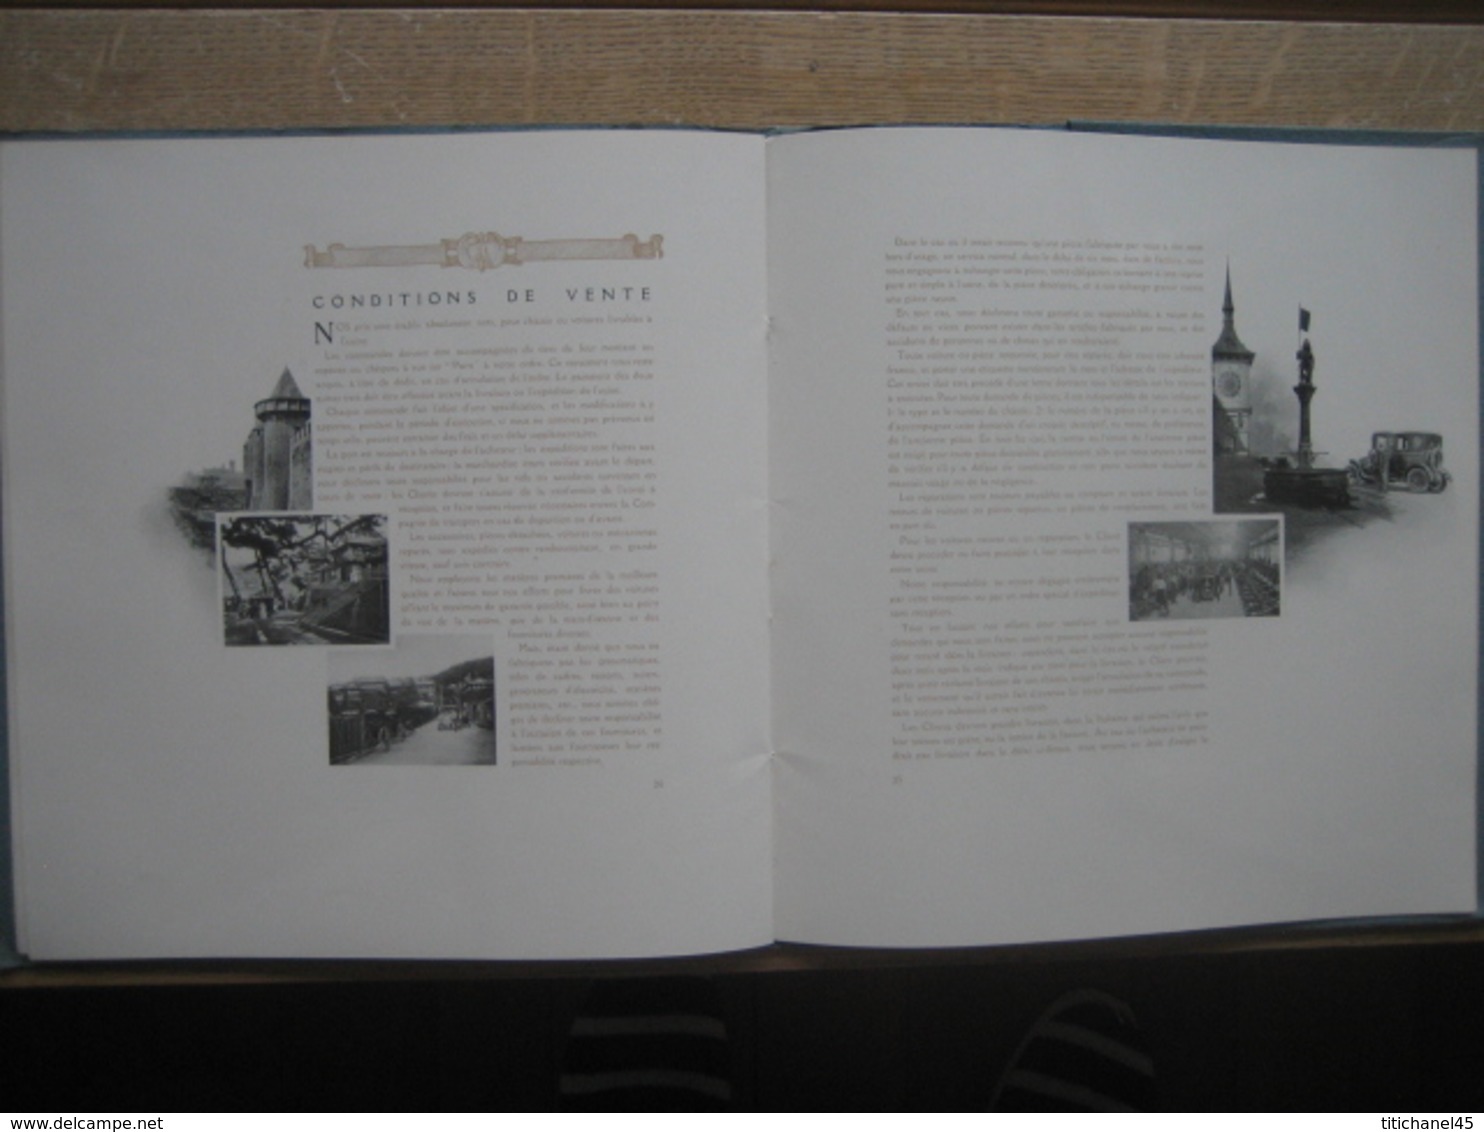 Luxueux & superbe catalogue 1908 RENAULT FRERES -Imprimerie DRAEGER - 42 pages illustrées S/usine, fabrication & modèles